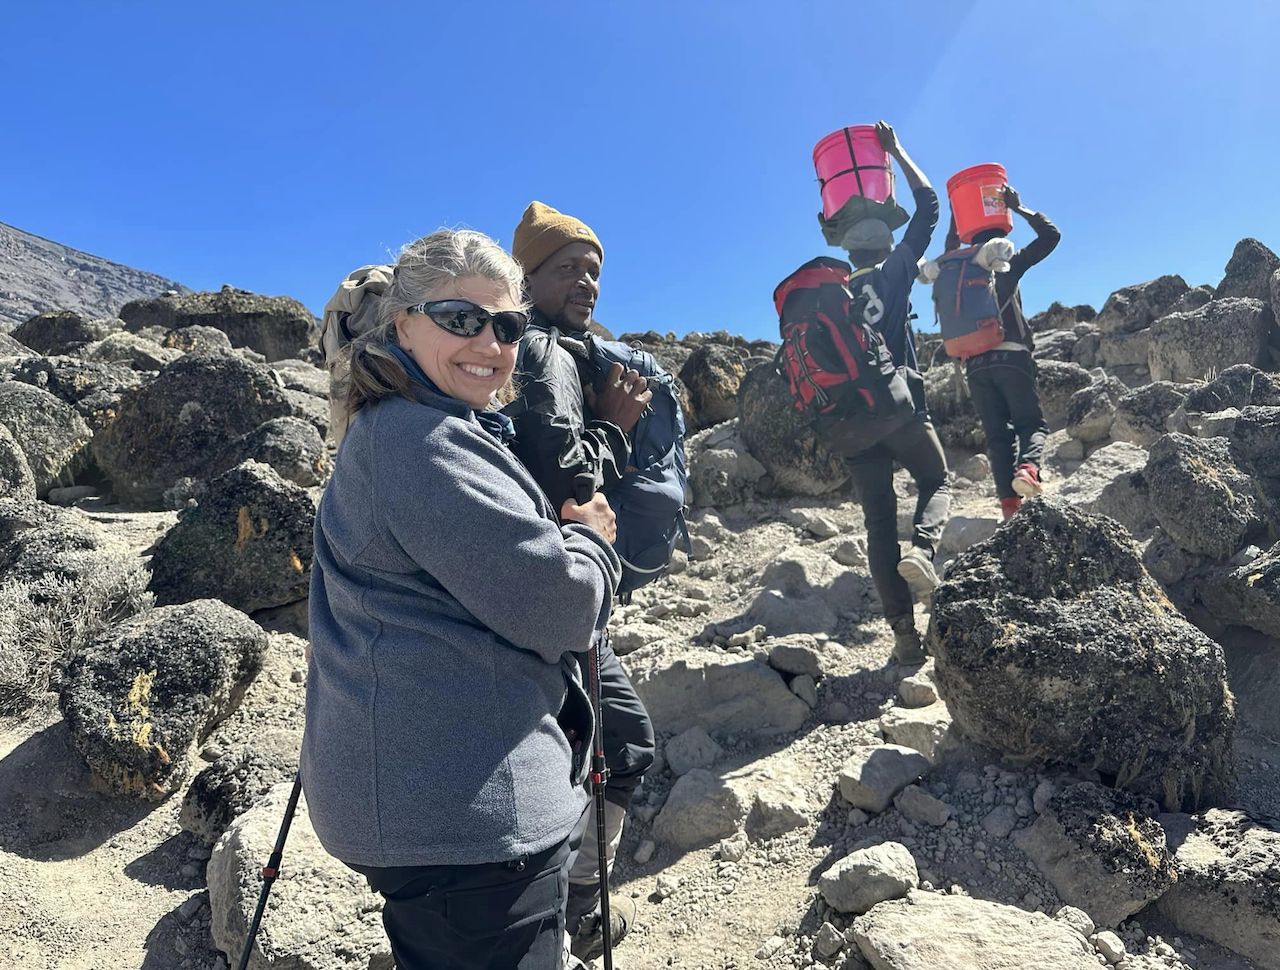 How to book Mount Kilimanjaro Climbing tour